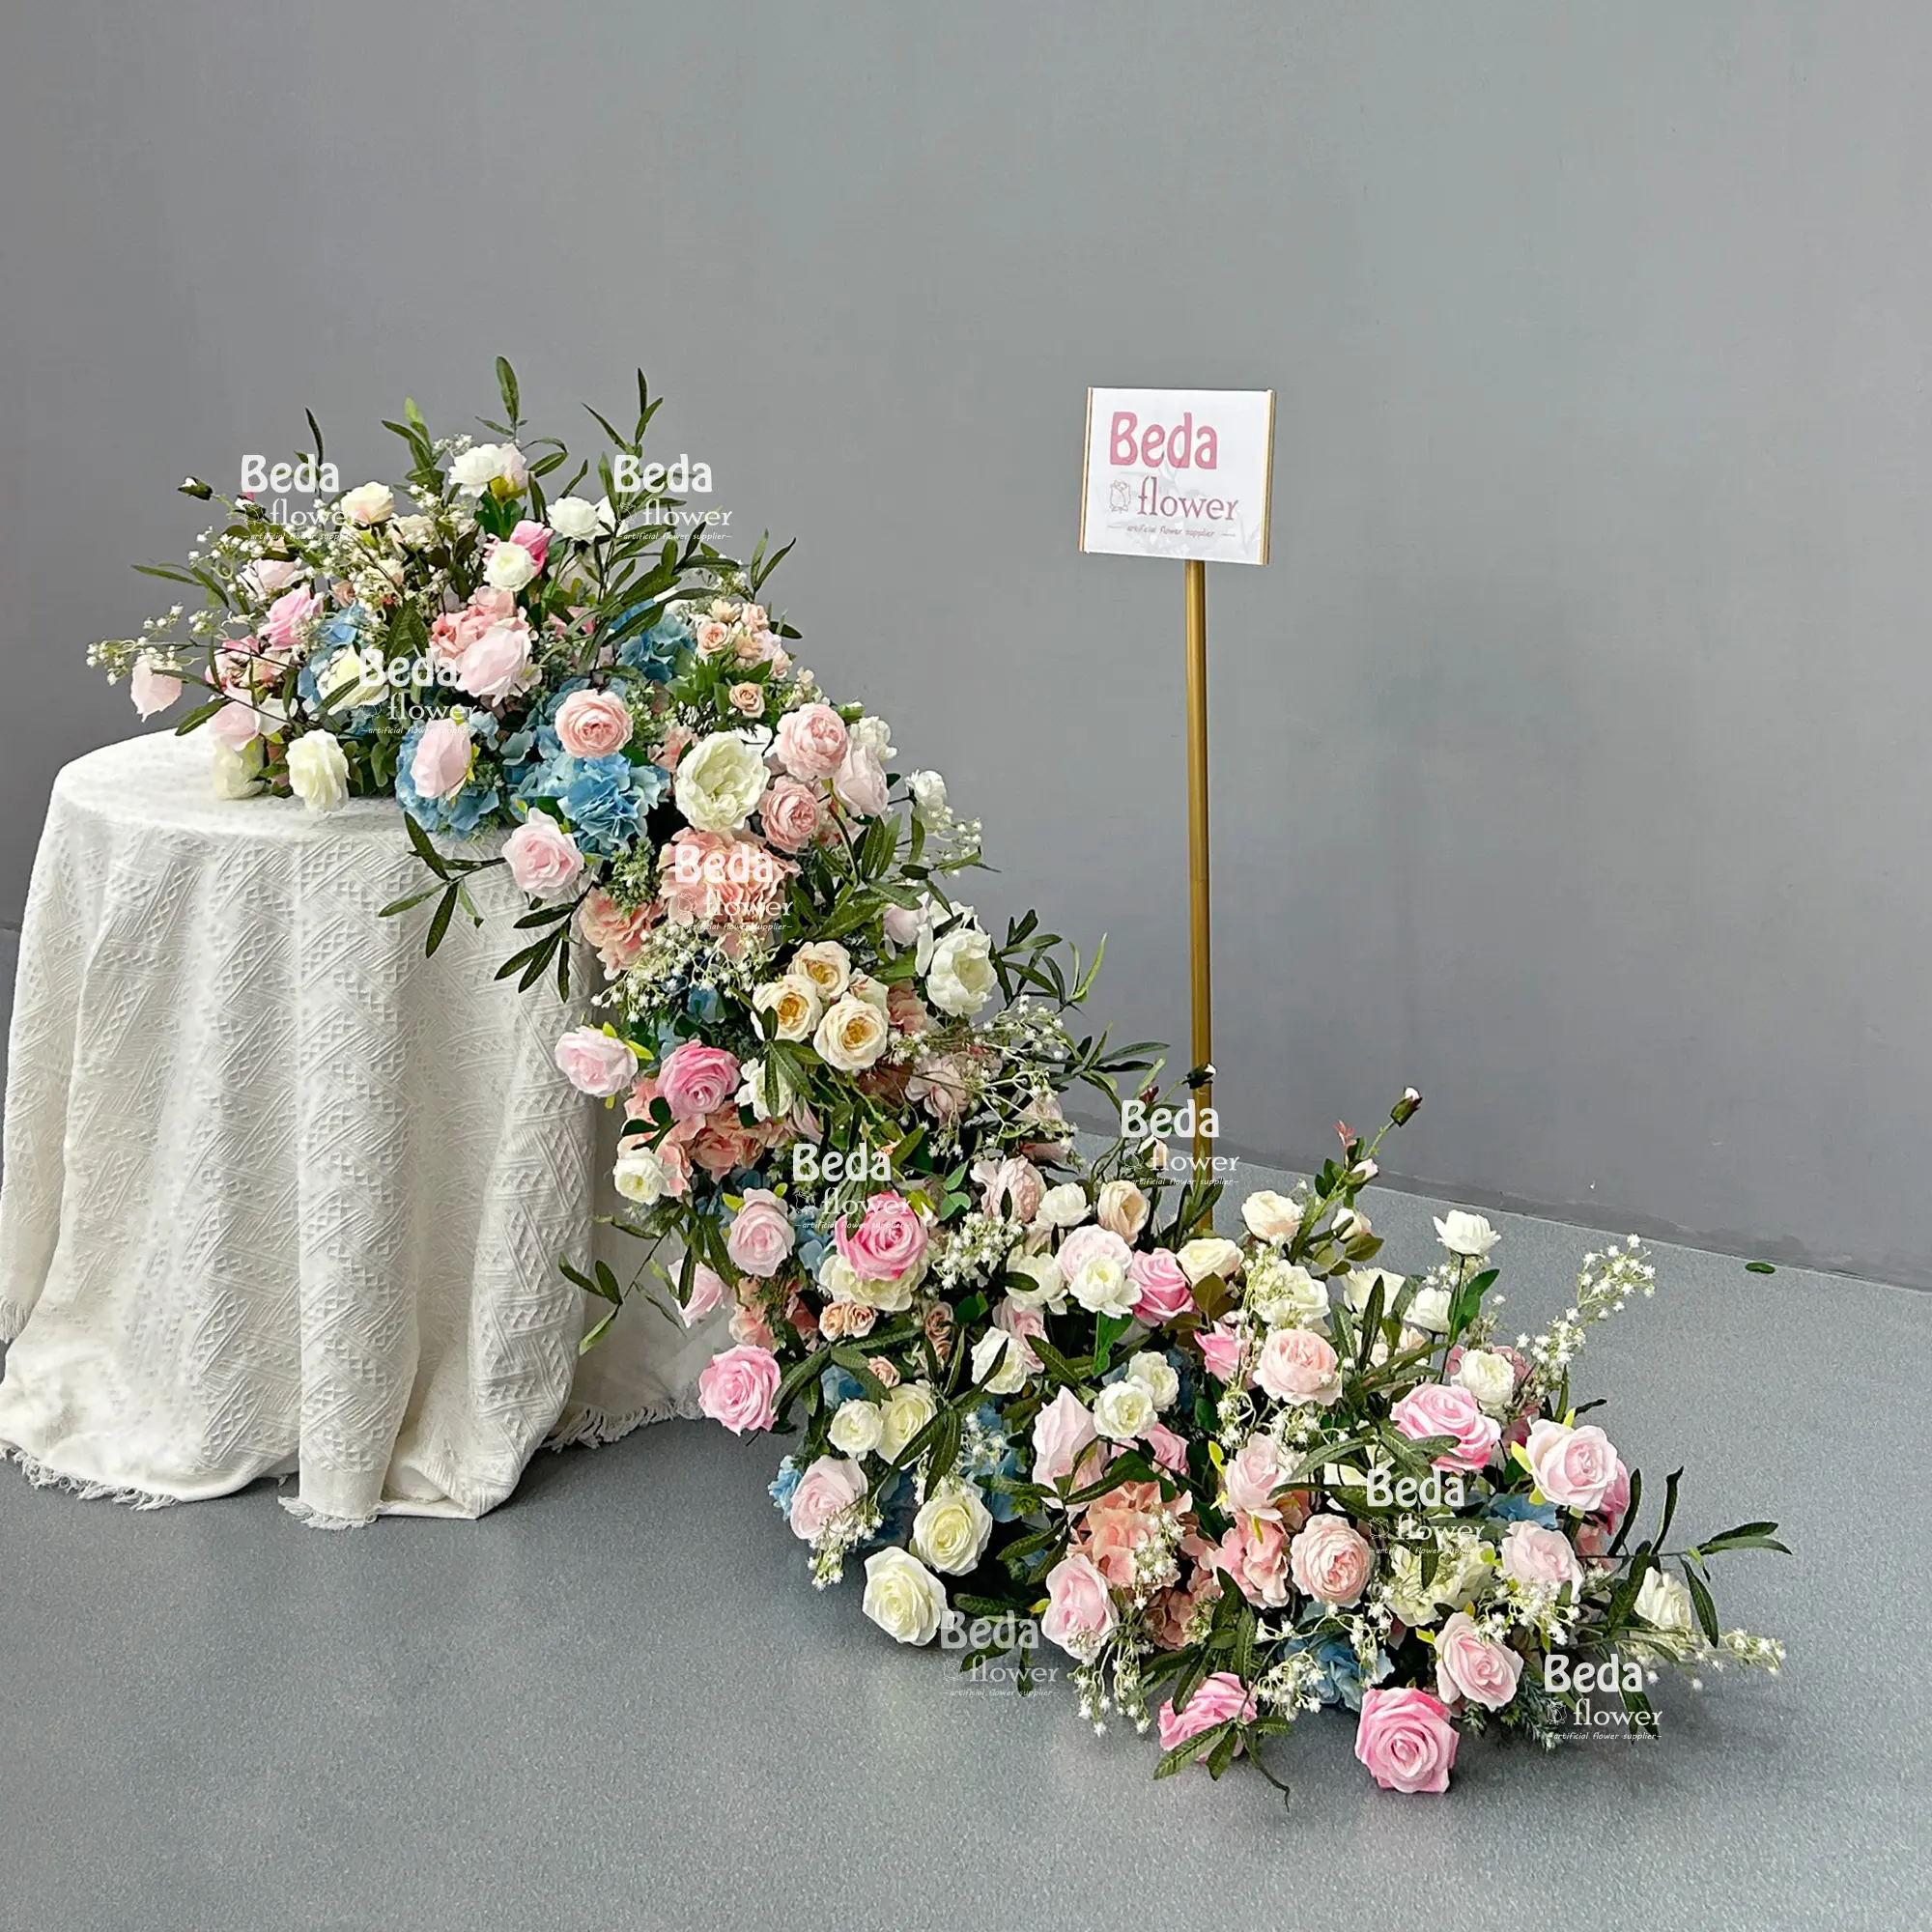 Beda grosir latar belakang lengkungan bunga merah muda dan putih kain untuk pernikahan atau pesta & Acara lainnya taplak bunga dekorasi